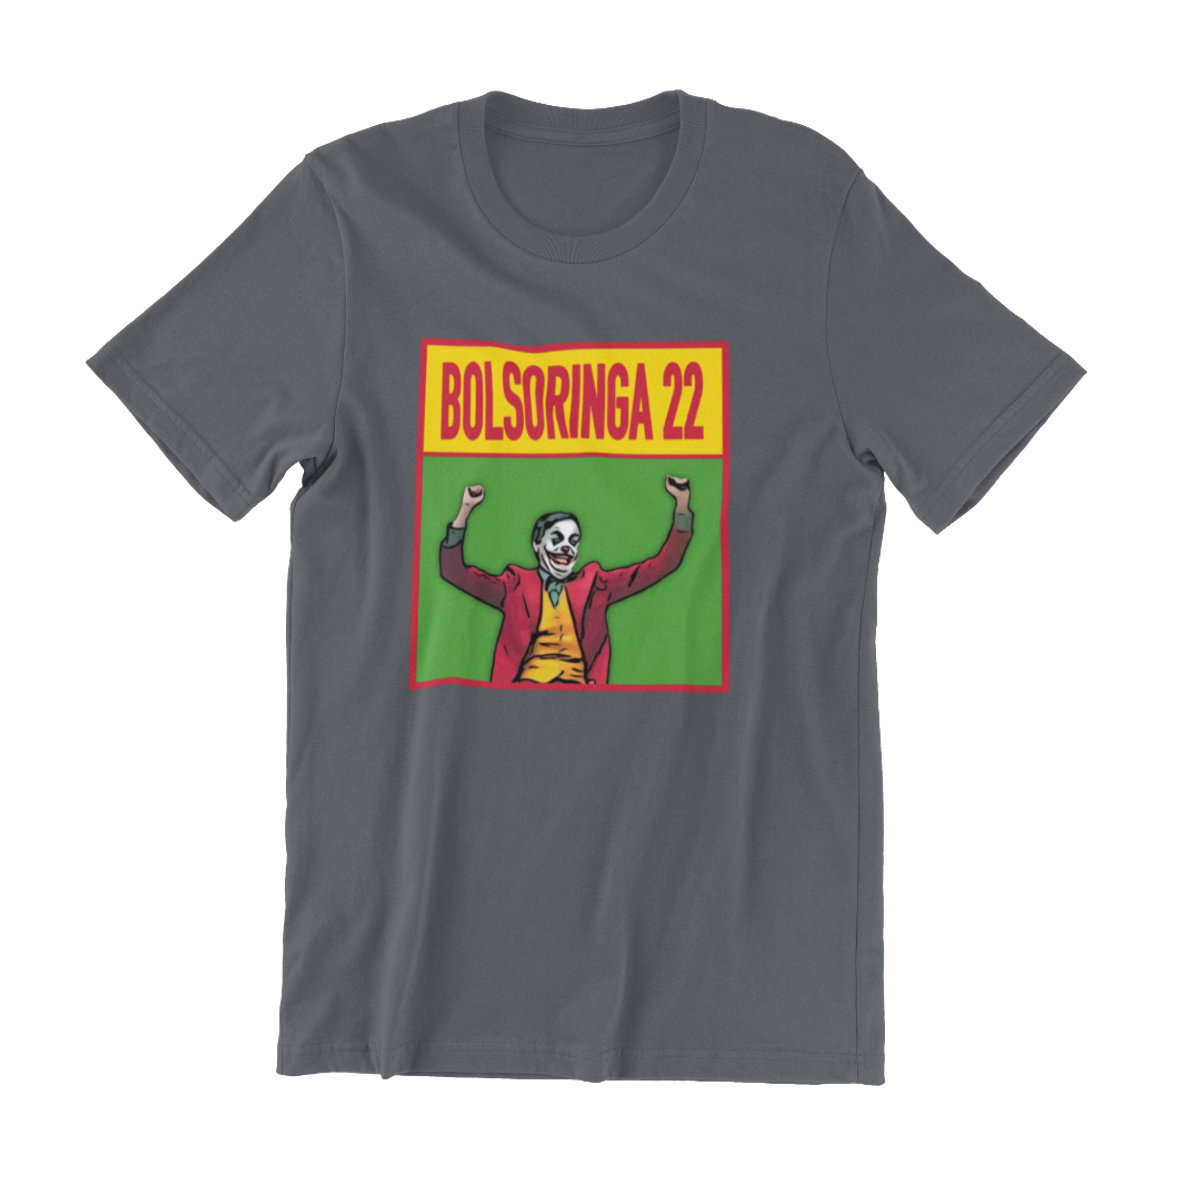 Nome do produto: Camiseta Bolsoringa - Cinza, unissex